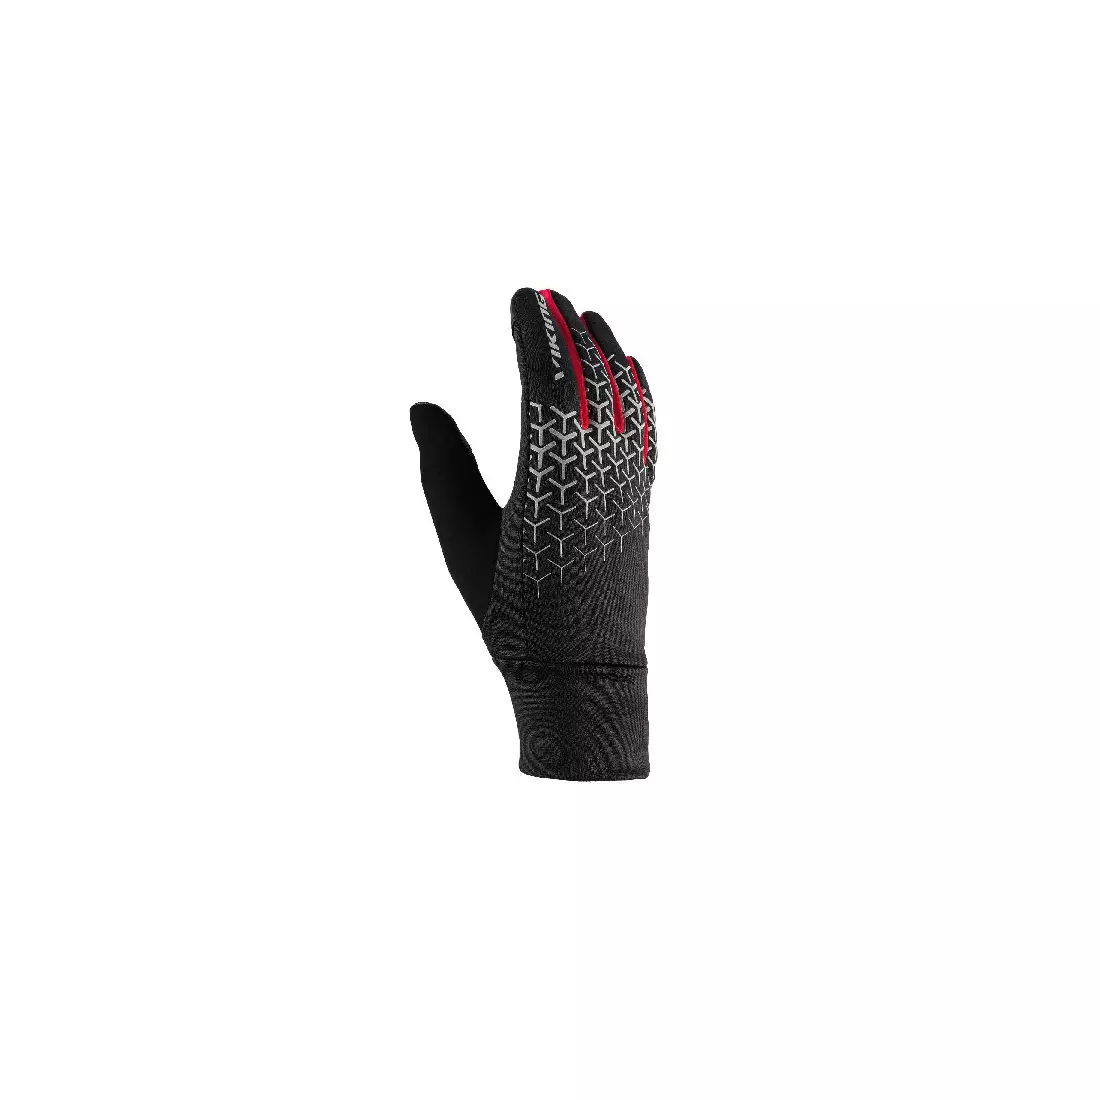 VIKING mănuși de iarnă ORTON MULTIFUNCTION black/red 140/20/3300/34